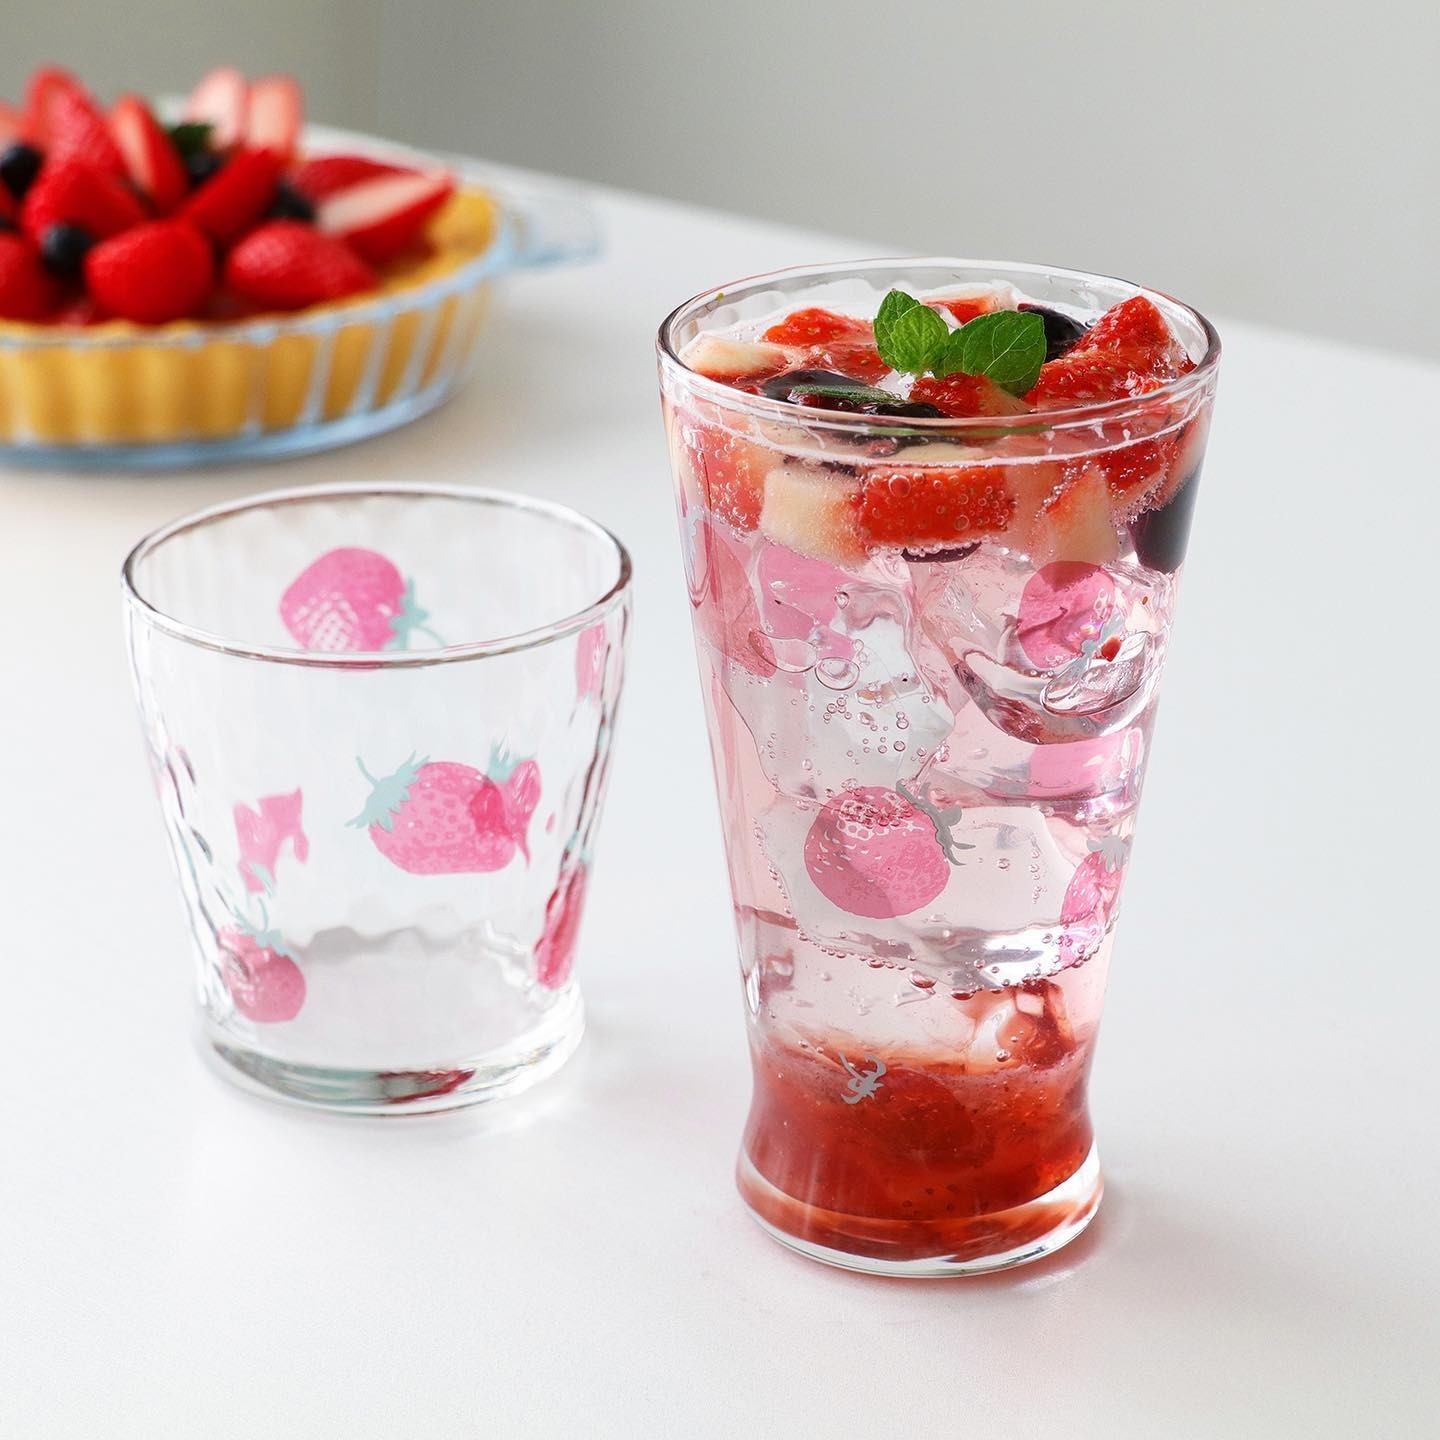 ISHIZUKA GLASS 石塚硝子 ADERIA 水果糖可愛日系玻璃杯+碗 3件套